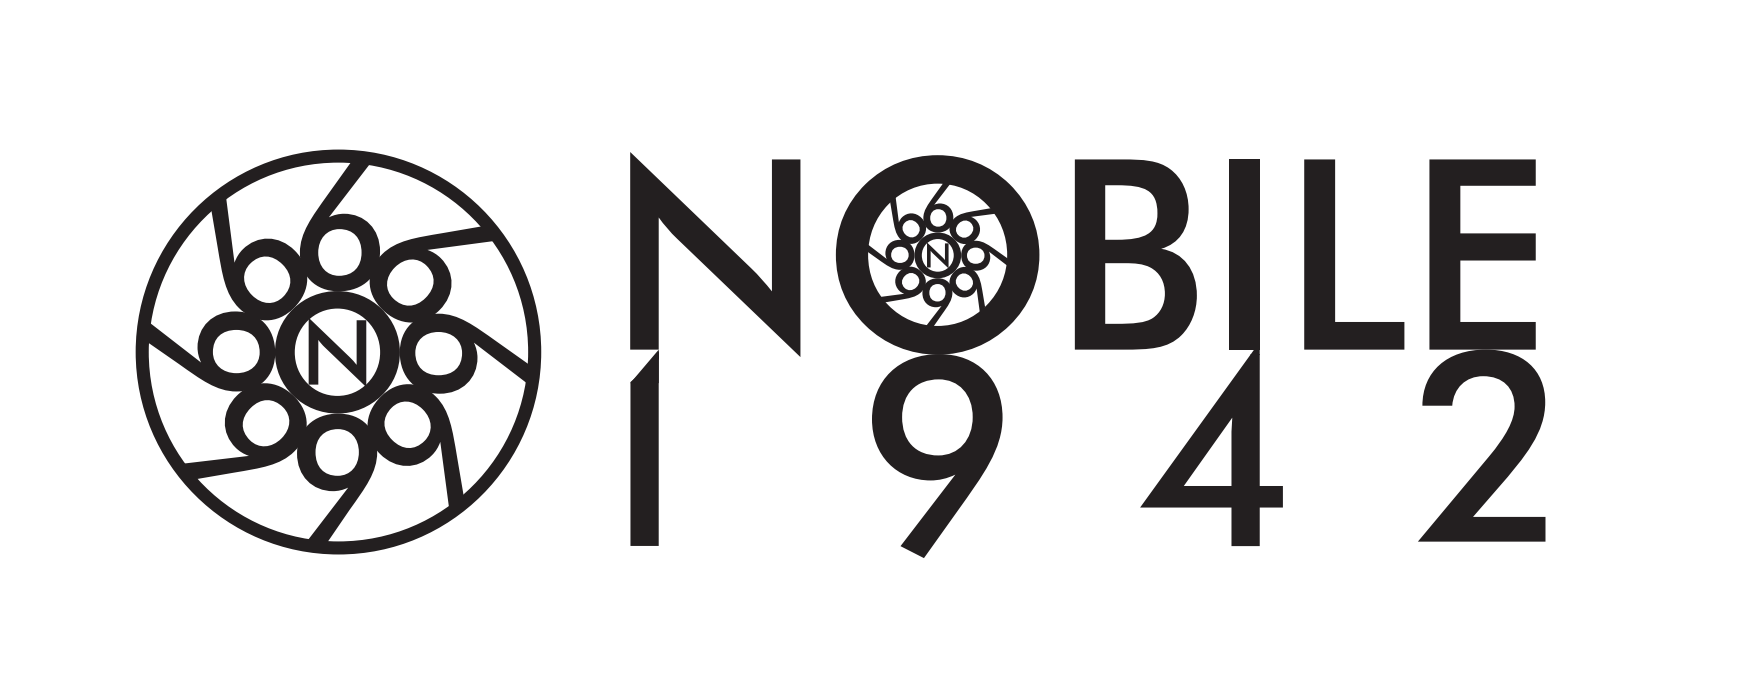 Nobile-1942-logo